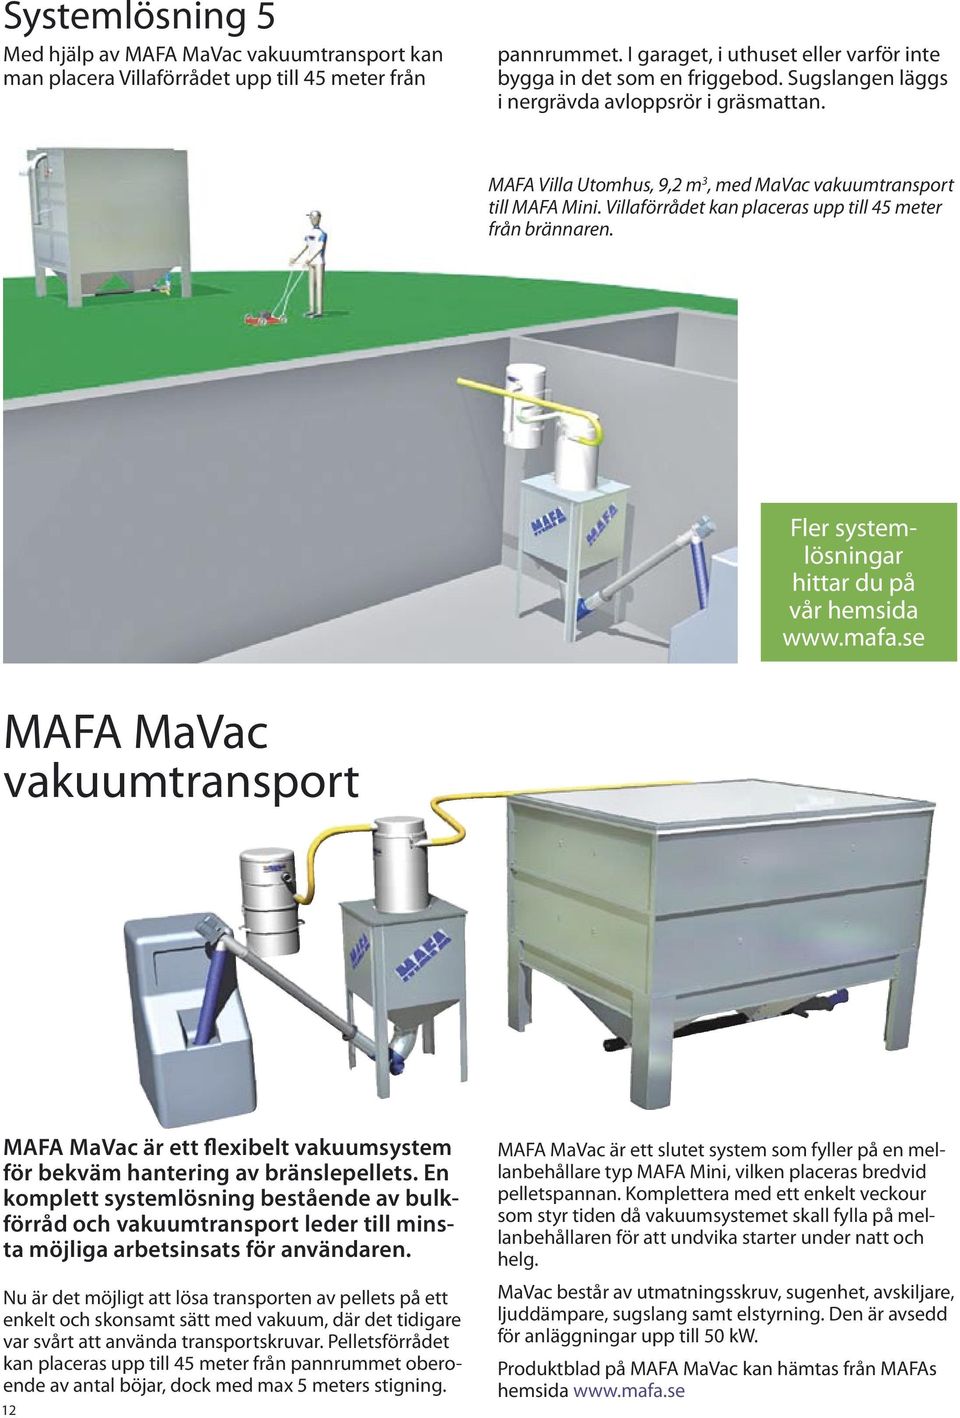 Fler systemlösningar hittar du på vår hemsida www.mafa.se MAFA MaVac vakuumtransport MAFA MaVac är ett flexibelt vakuumsystem för bekväm hantering av bränslepellets.